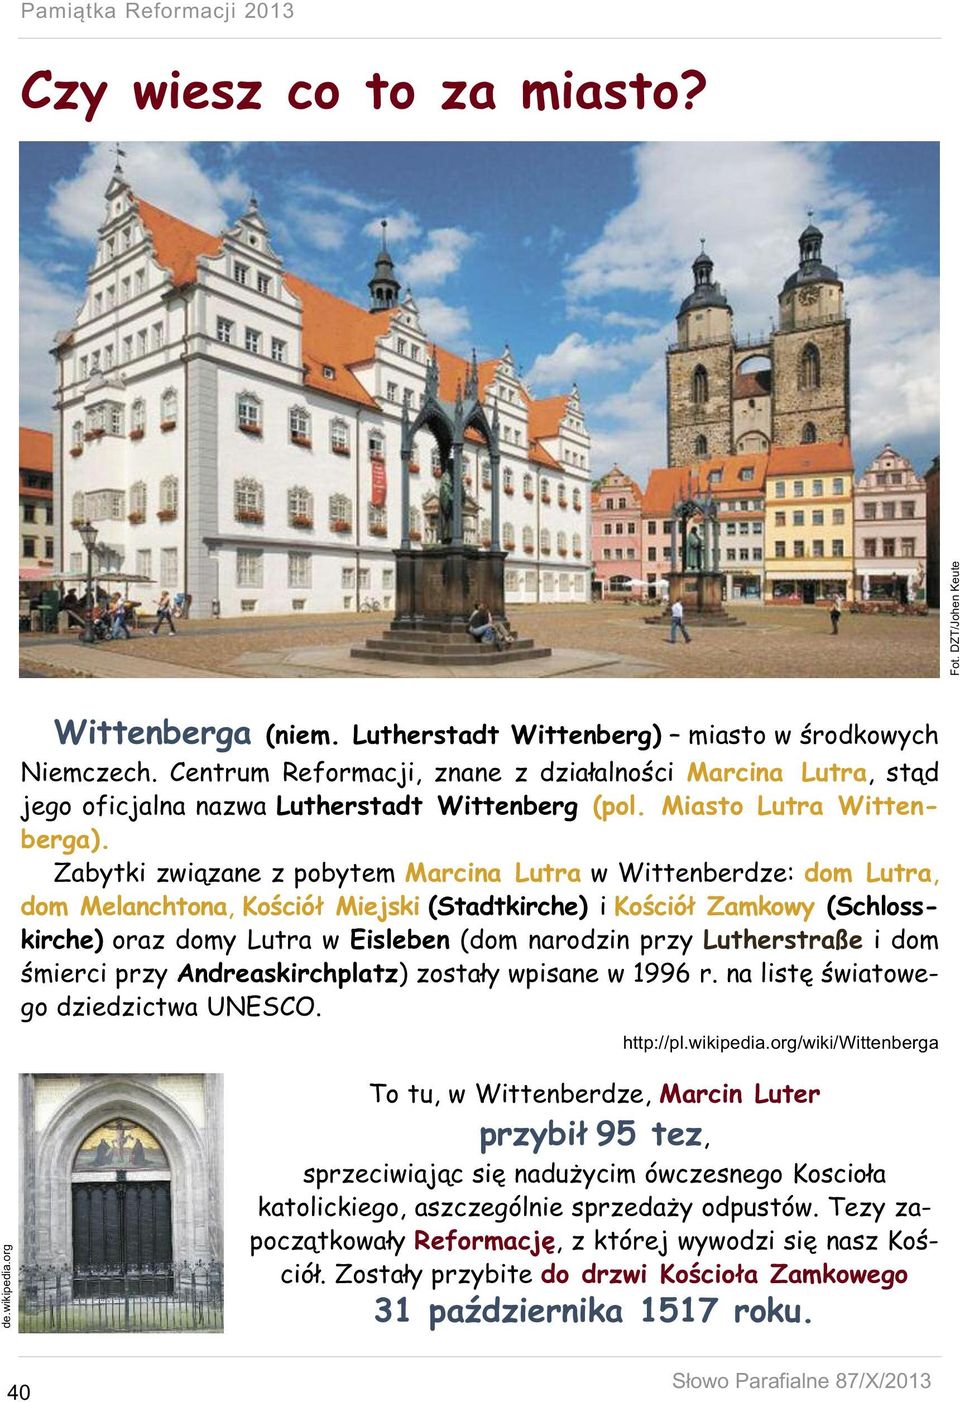 Zabytki związane z pobytem Marcina Lutra w Wittenberdze: dom Lutra, dom Melanchtona, Kościół Miejski (Stadtkirche) i Kościół Zamkowy (Schlosskirche) oraz domy Lutra w Eisleben (dom narodzin przy